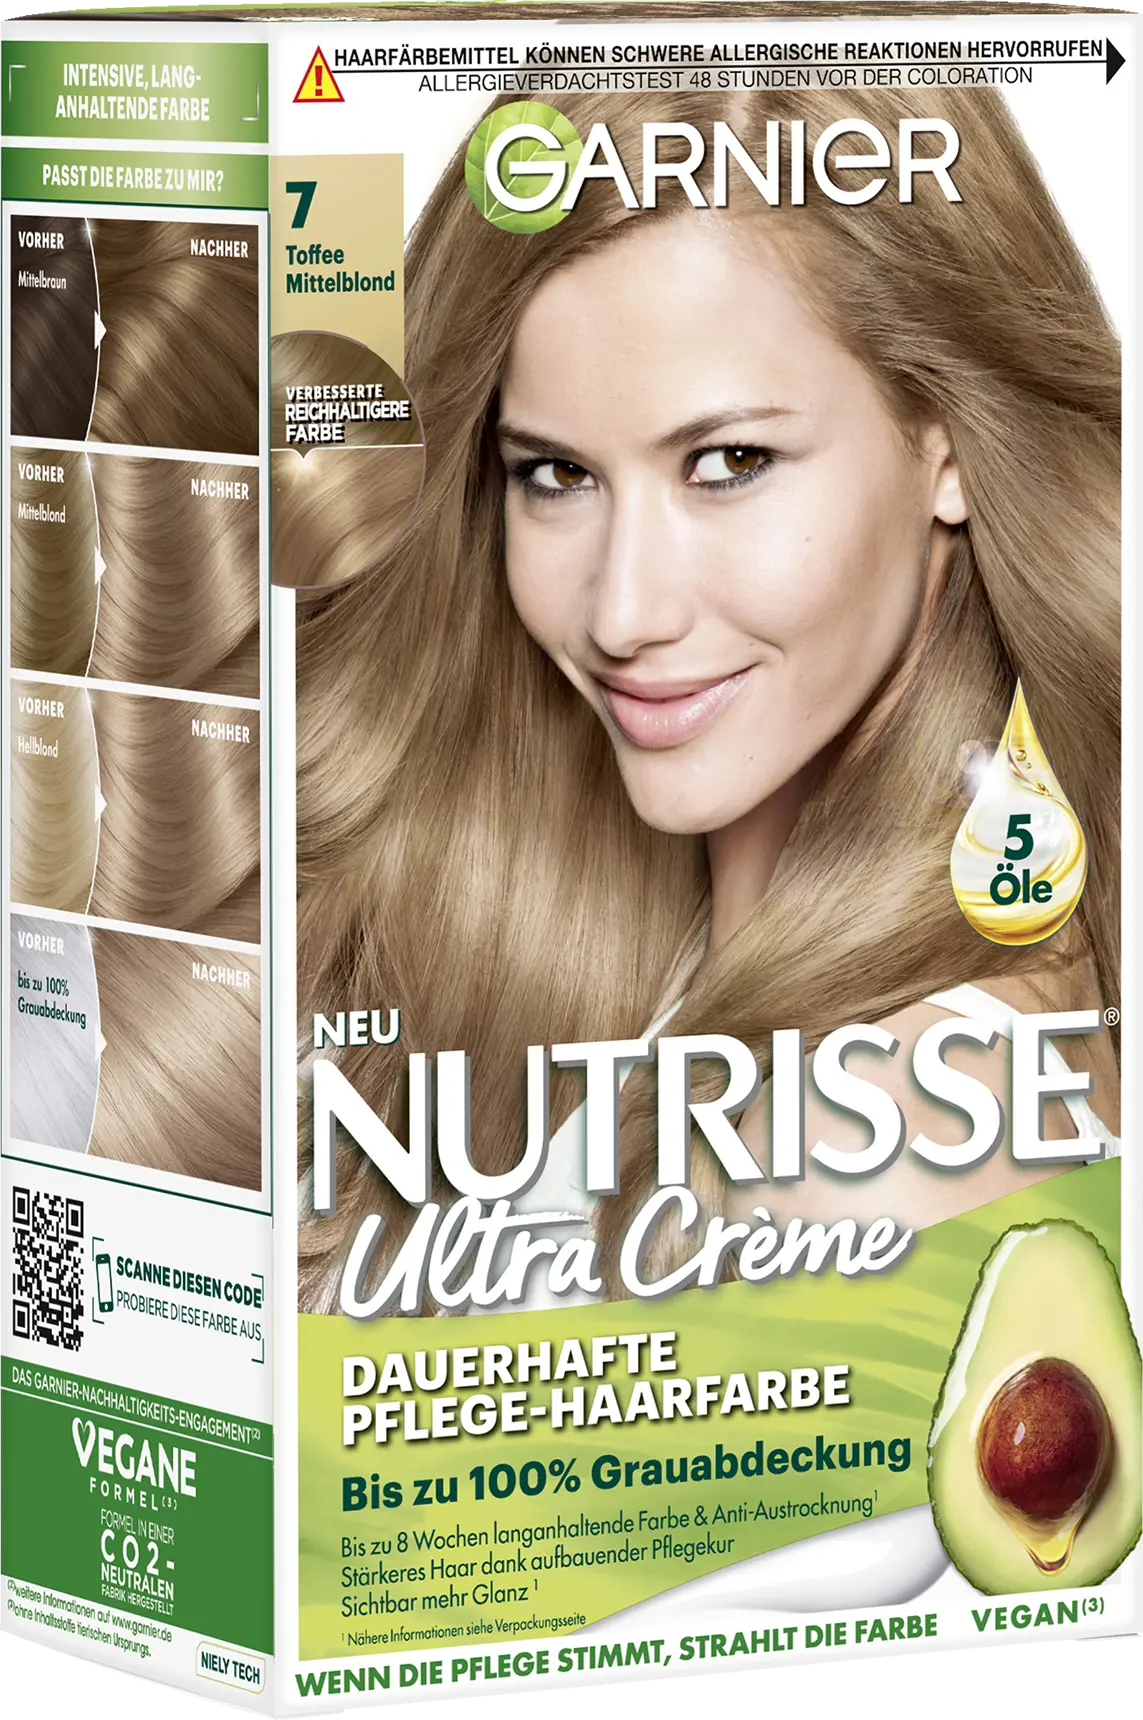 Hair haarbiologie Nutrisse - Medium Blonde 7 Color Toffee Permanent Garnier